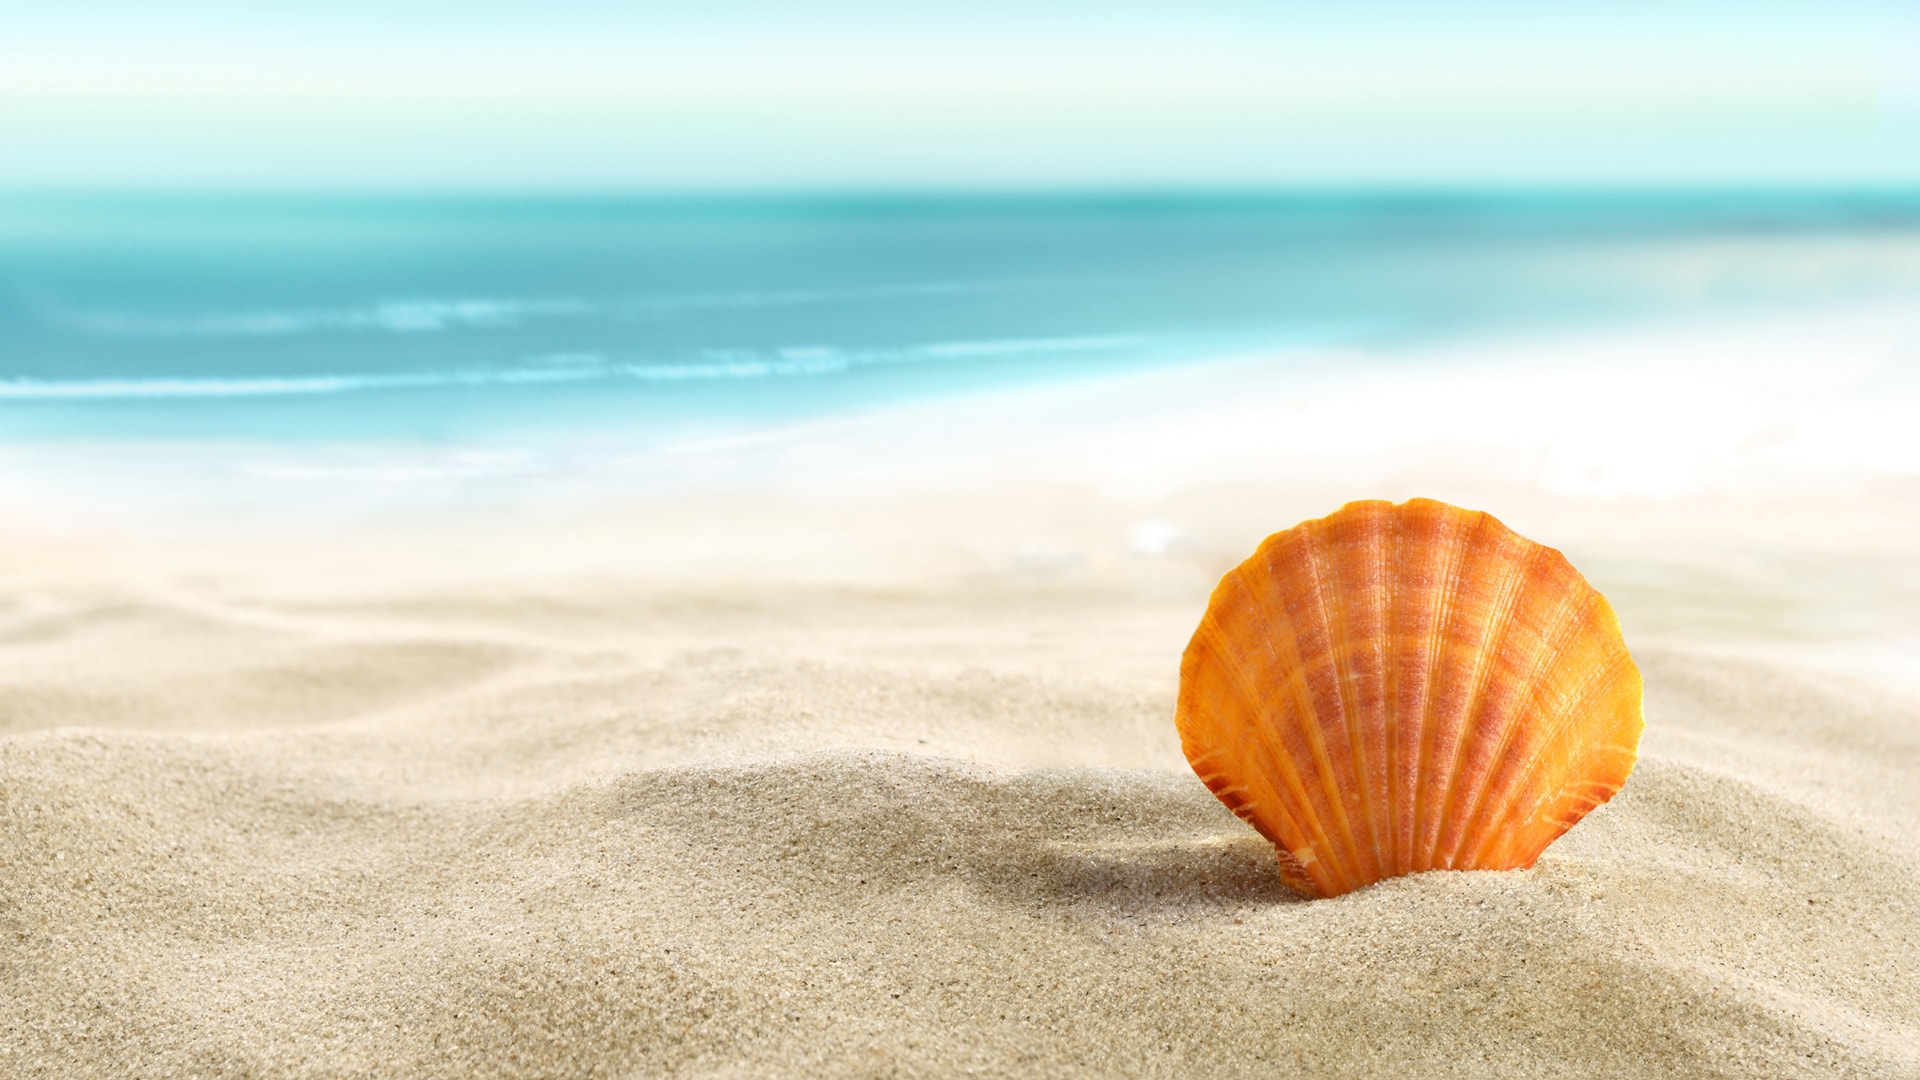 寂静海滩搭配晶莹贝壳增添不一样的海边风景壁纸